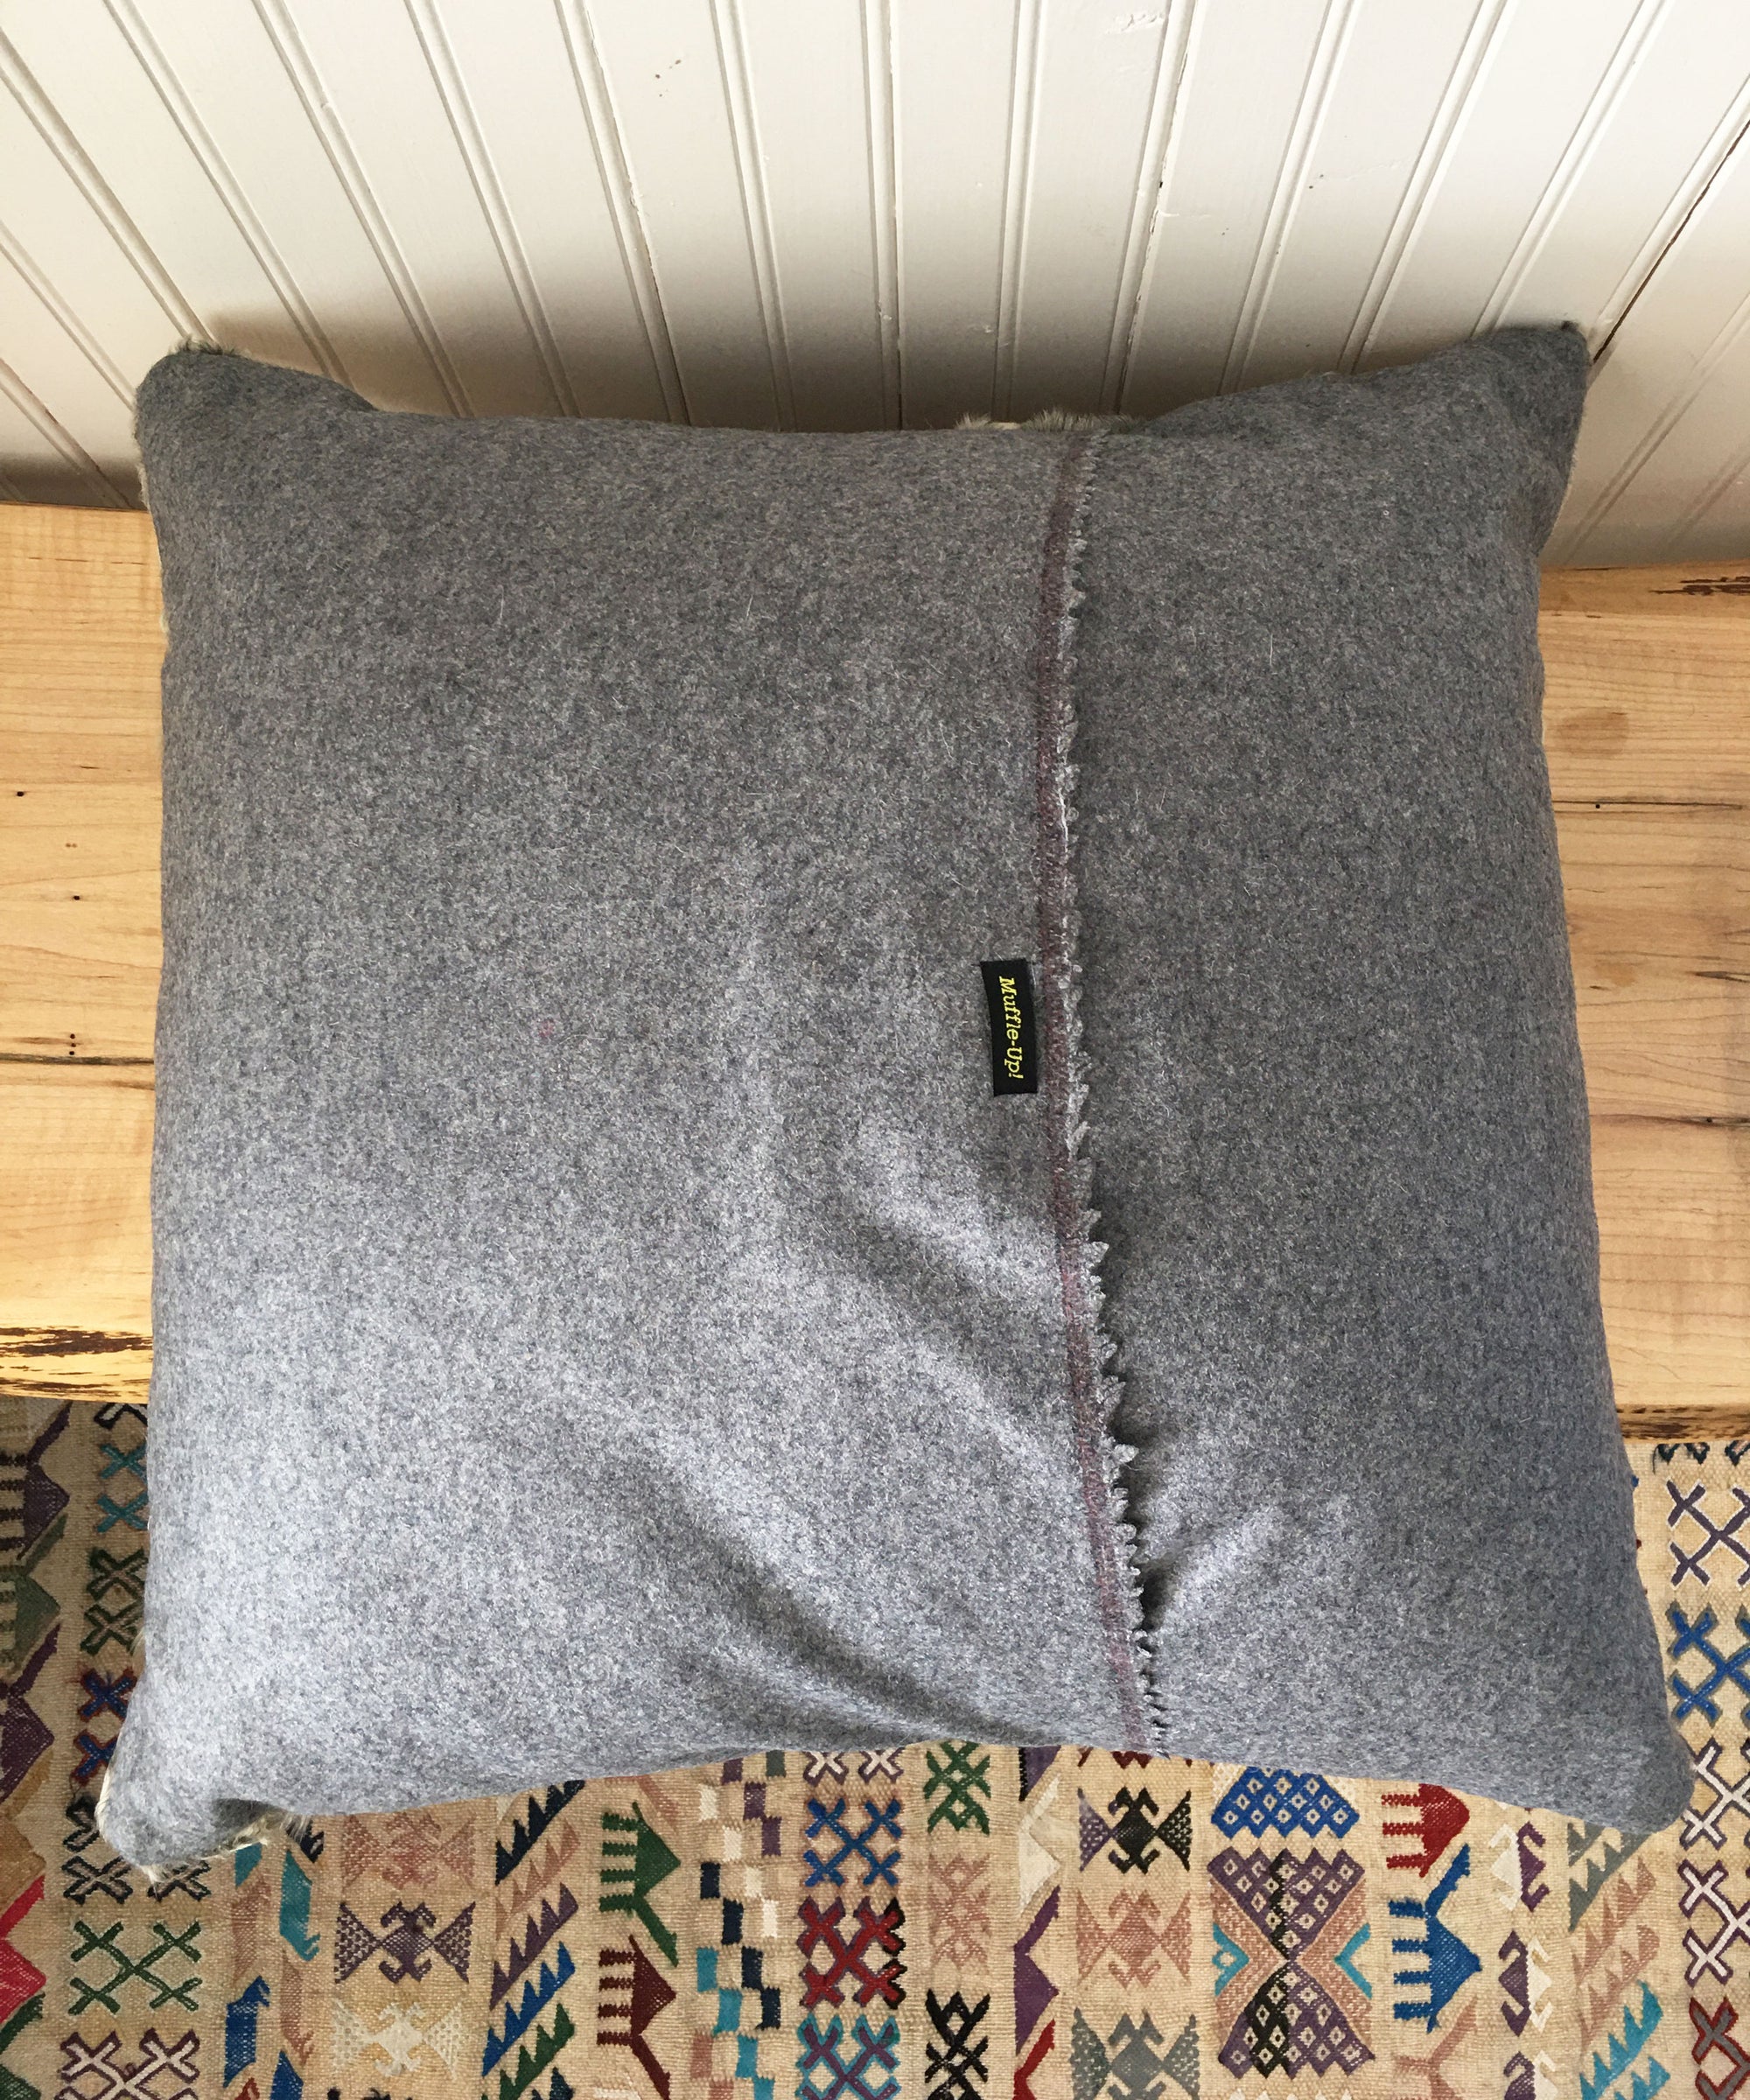 Reclaimed Gray Persian Lamb Fur Pillow 22 x 22"